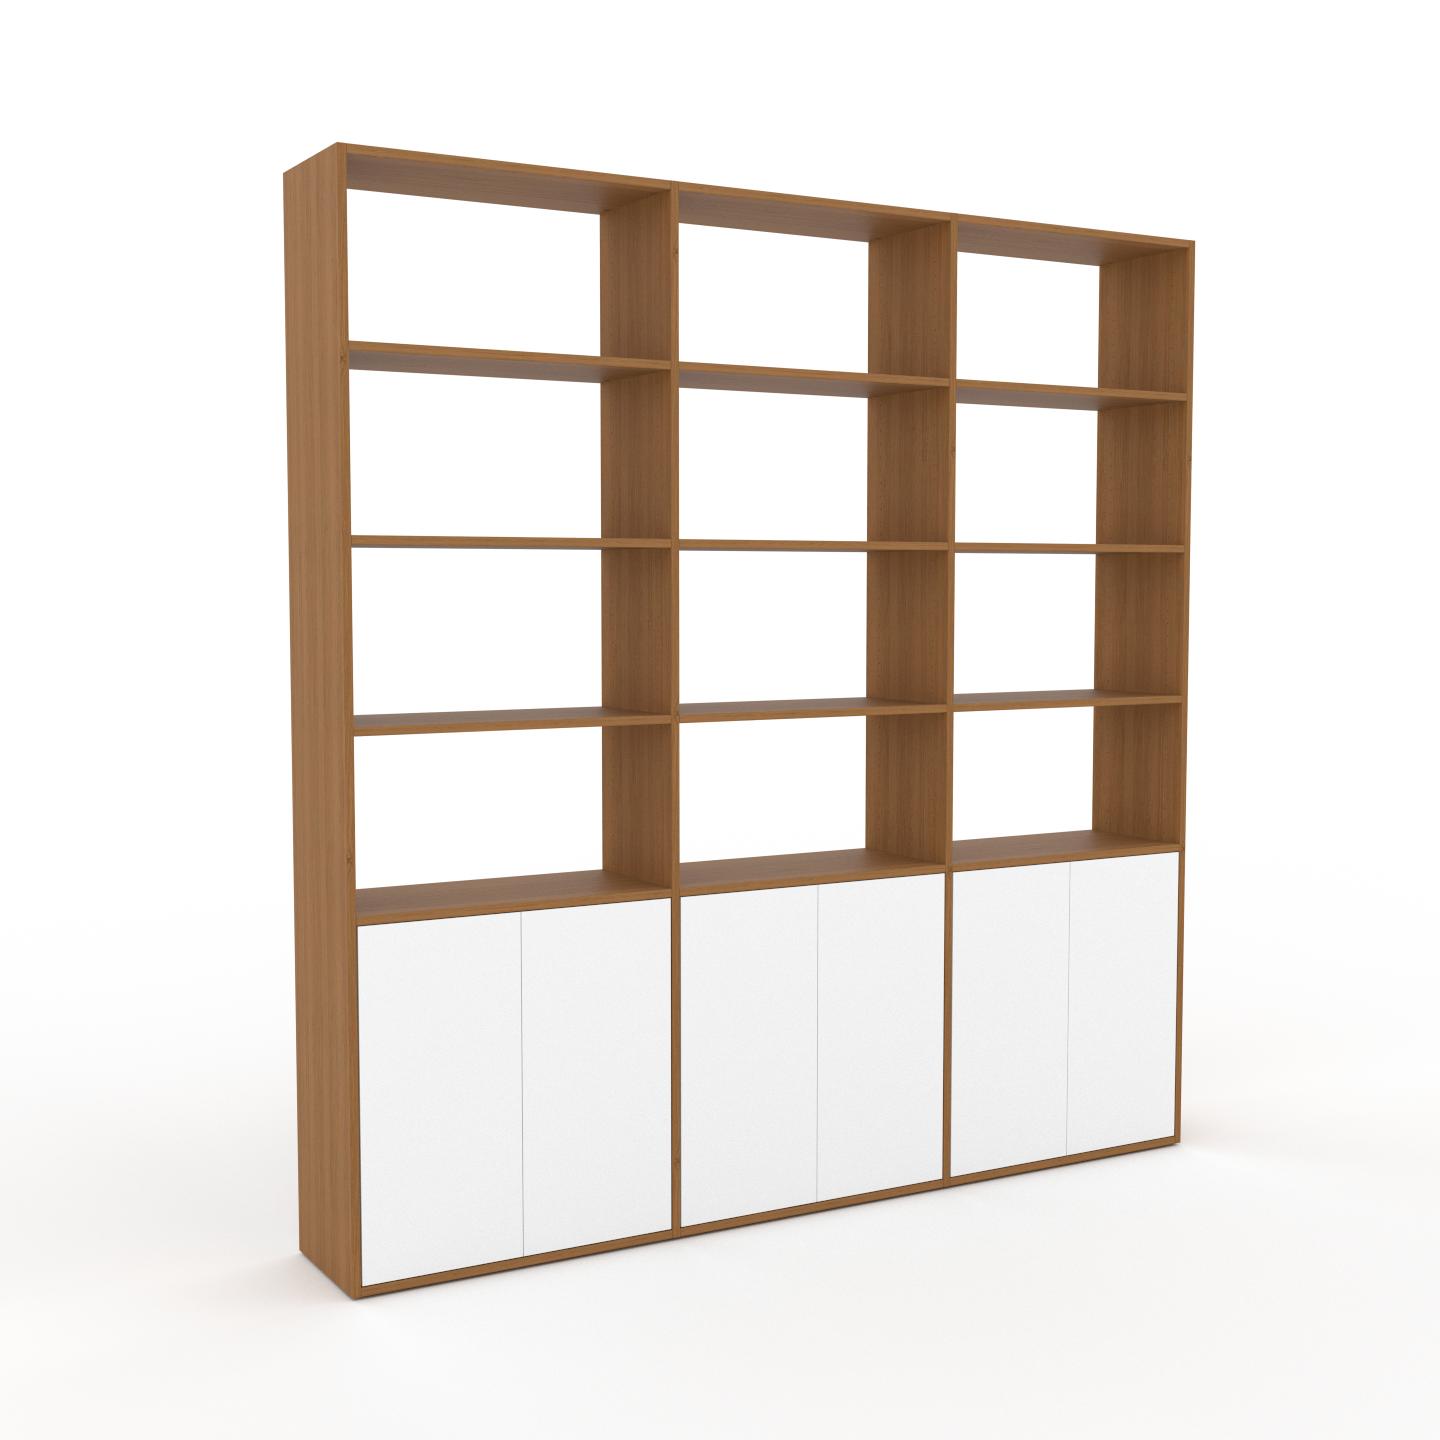 MYCS Wohnwand Weiß - Individuelle Designer-Regalwand: Türen in Weiß - Hochwertige Materialien - 226 x 233 x 35 cm, Konfigurator